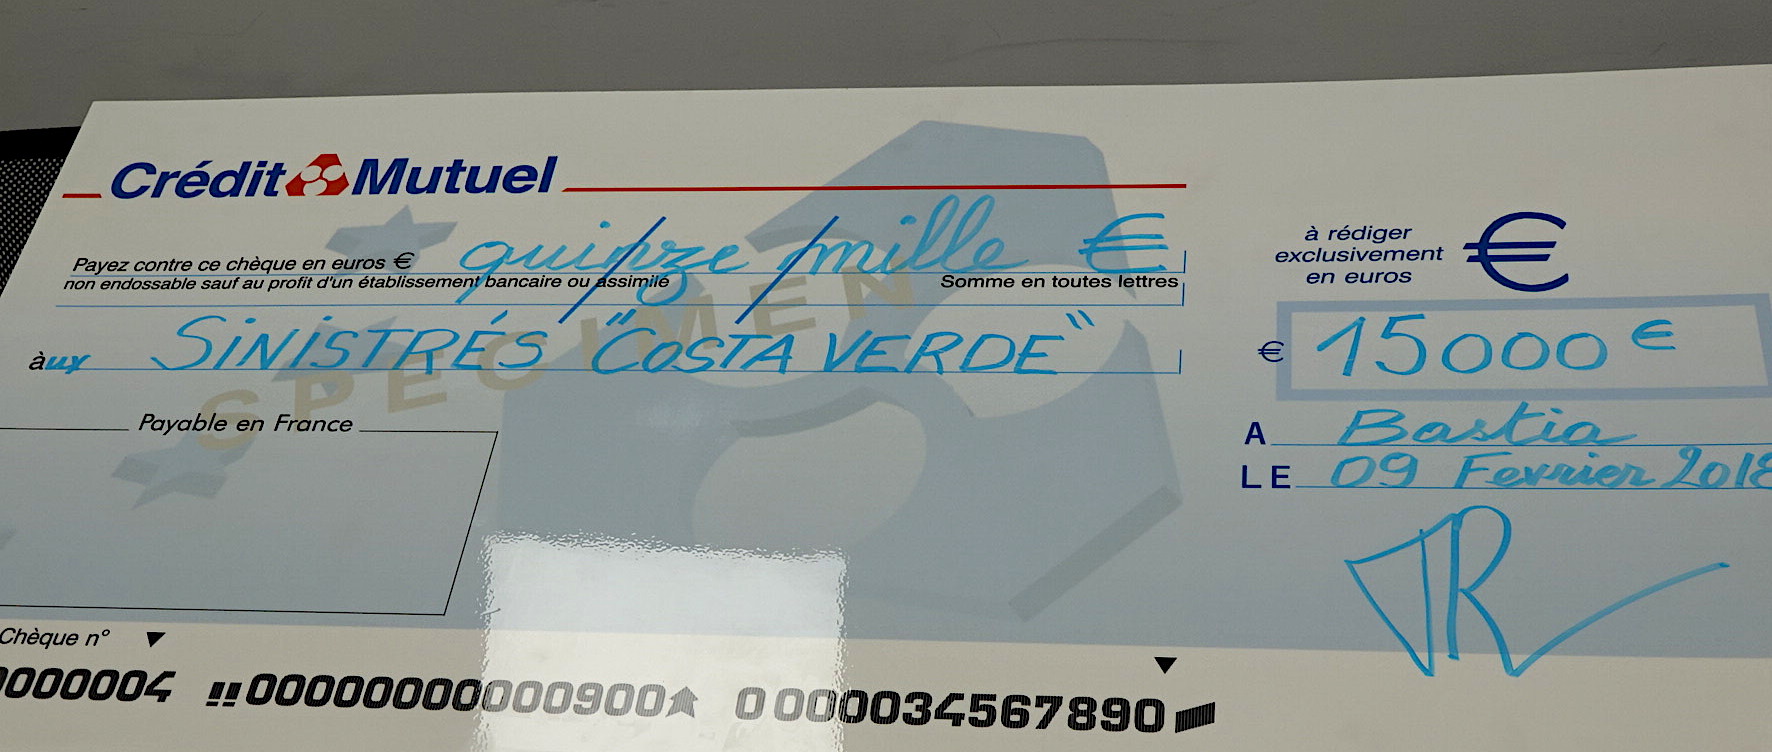 Crédit Mutuel de la Corse : 15 000€ pour les sinistrés de Costa Verde